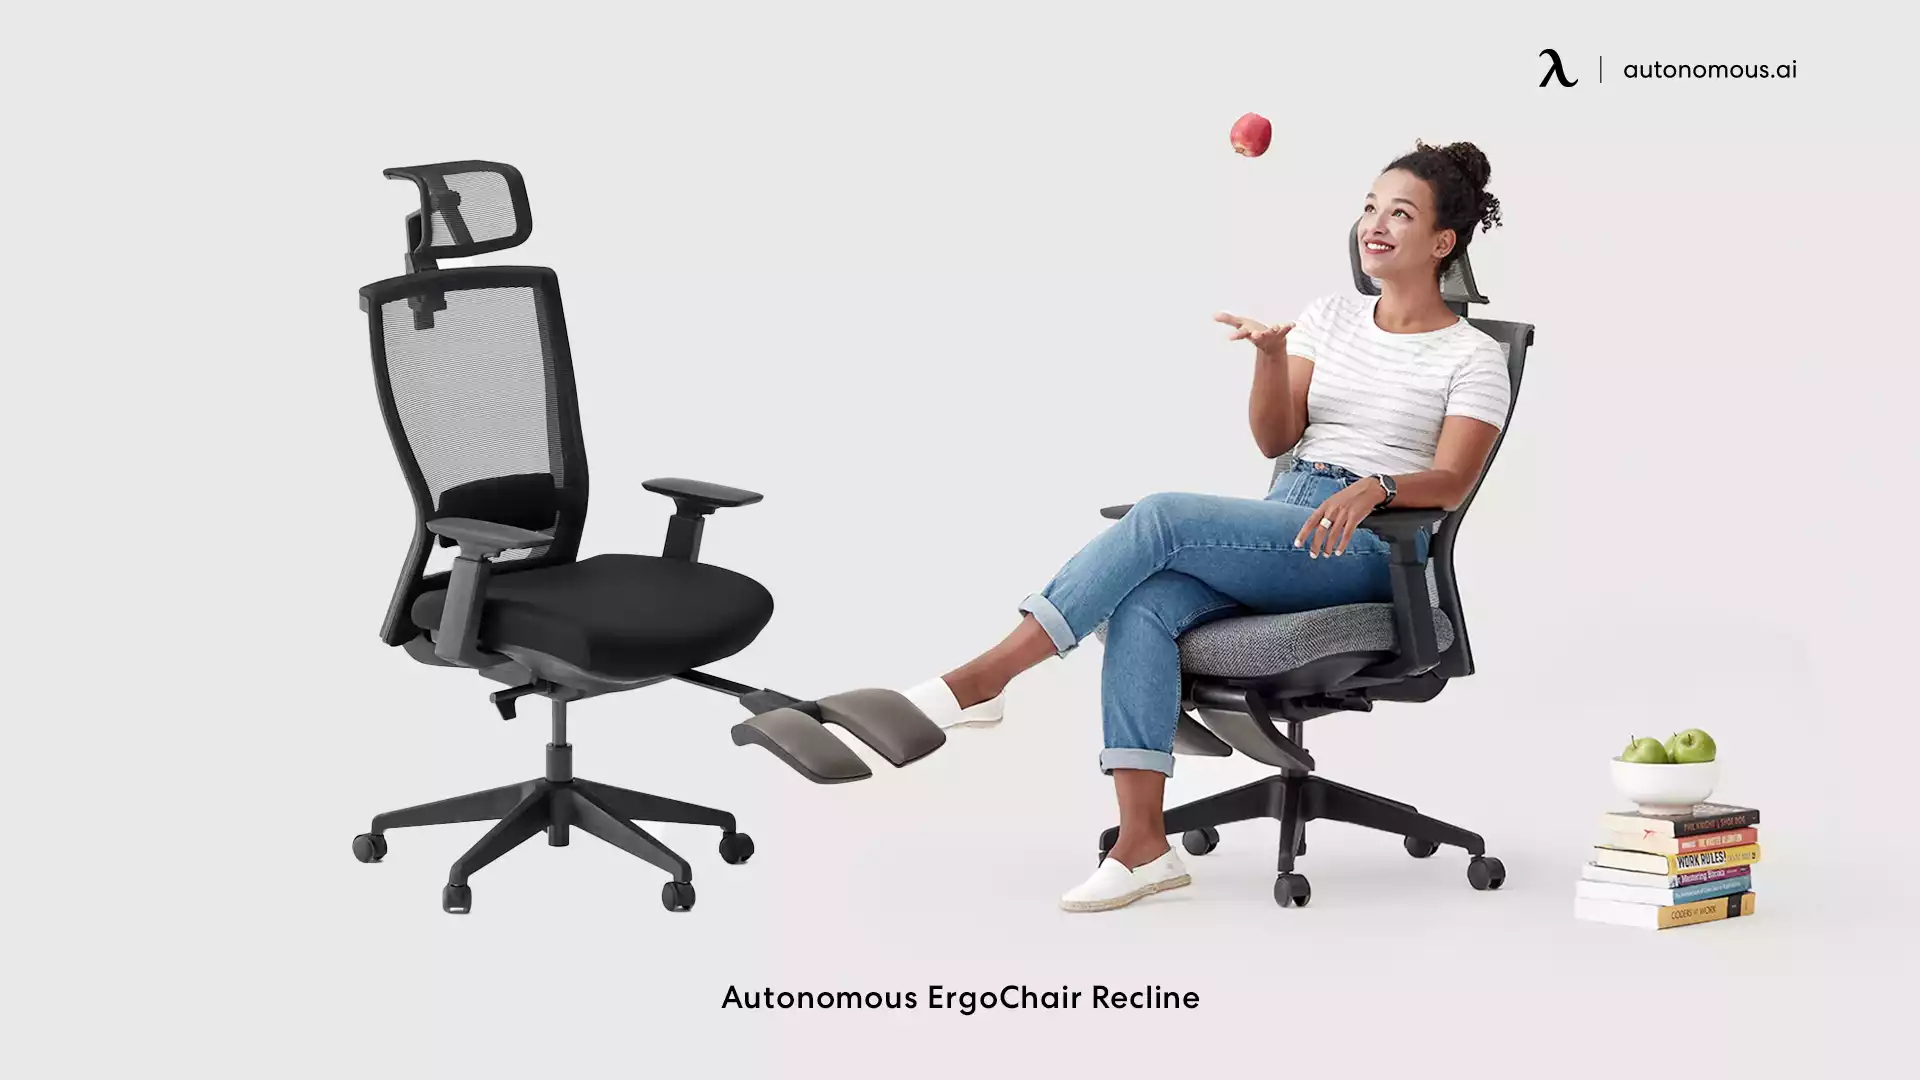 ErgoChair Recline types of chair